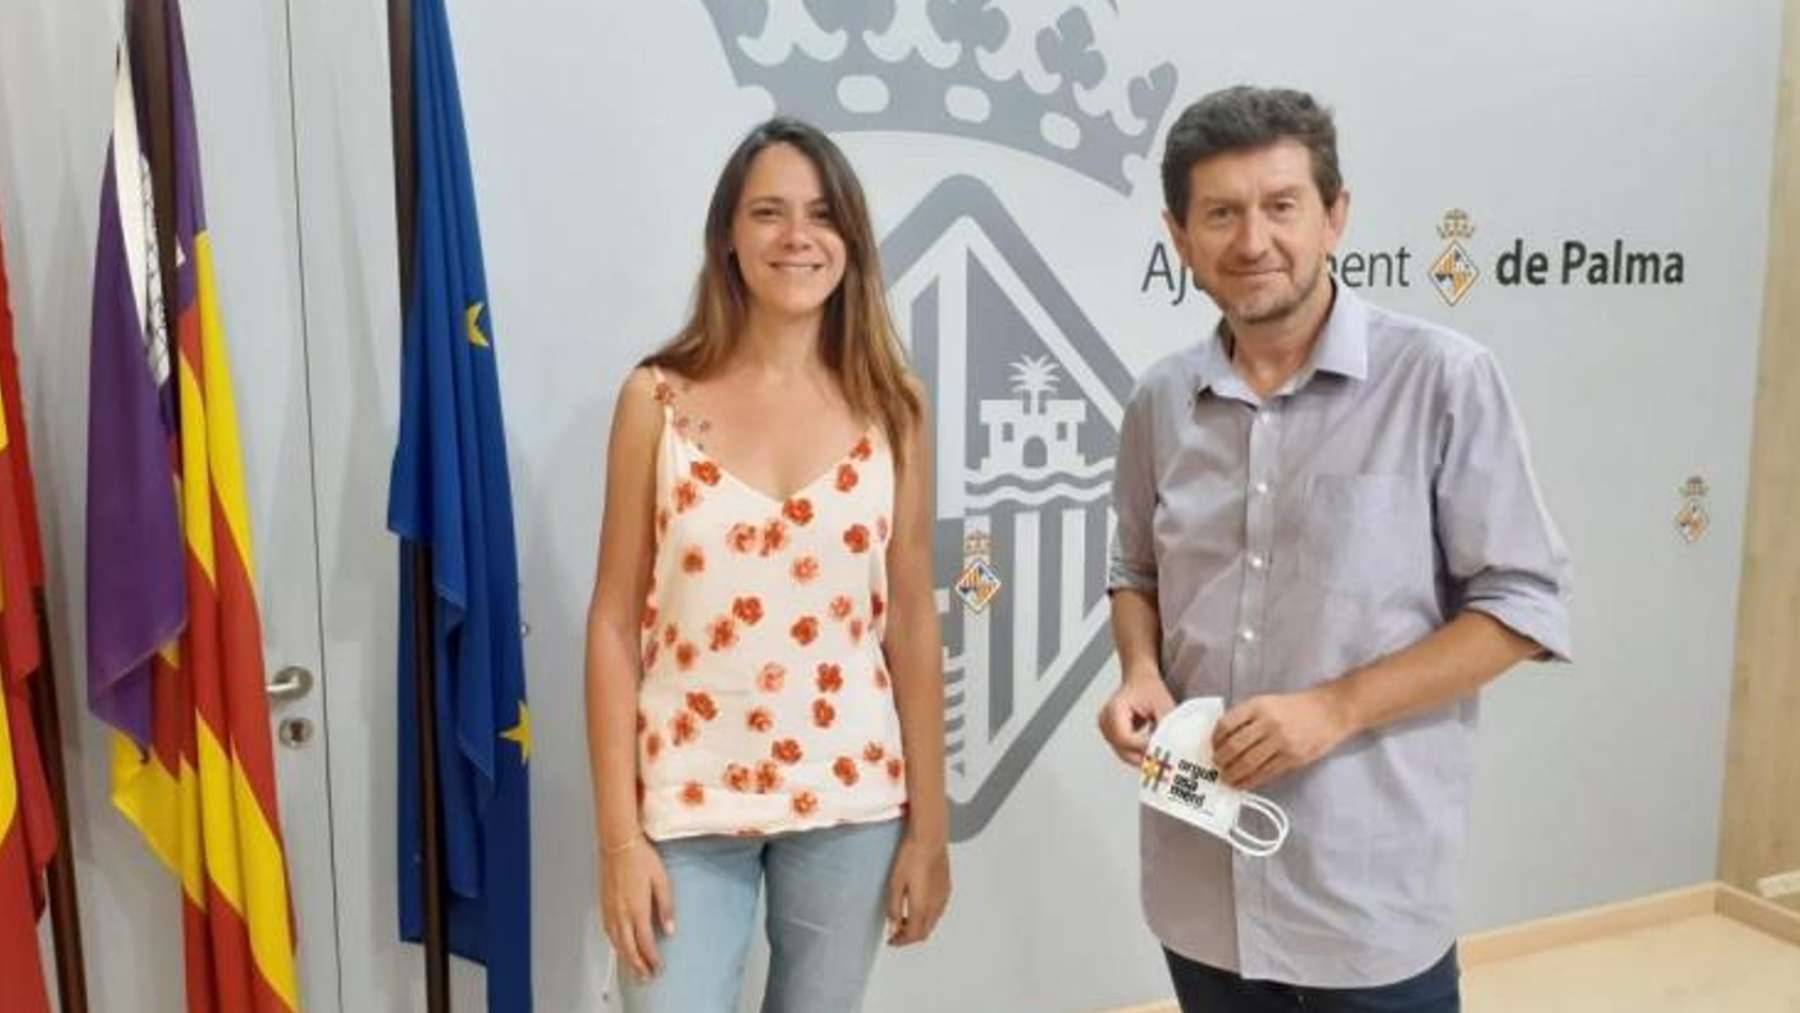 Los concejales de Podemos Claudia Costa del Río y Alberto Jarabo.